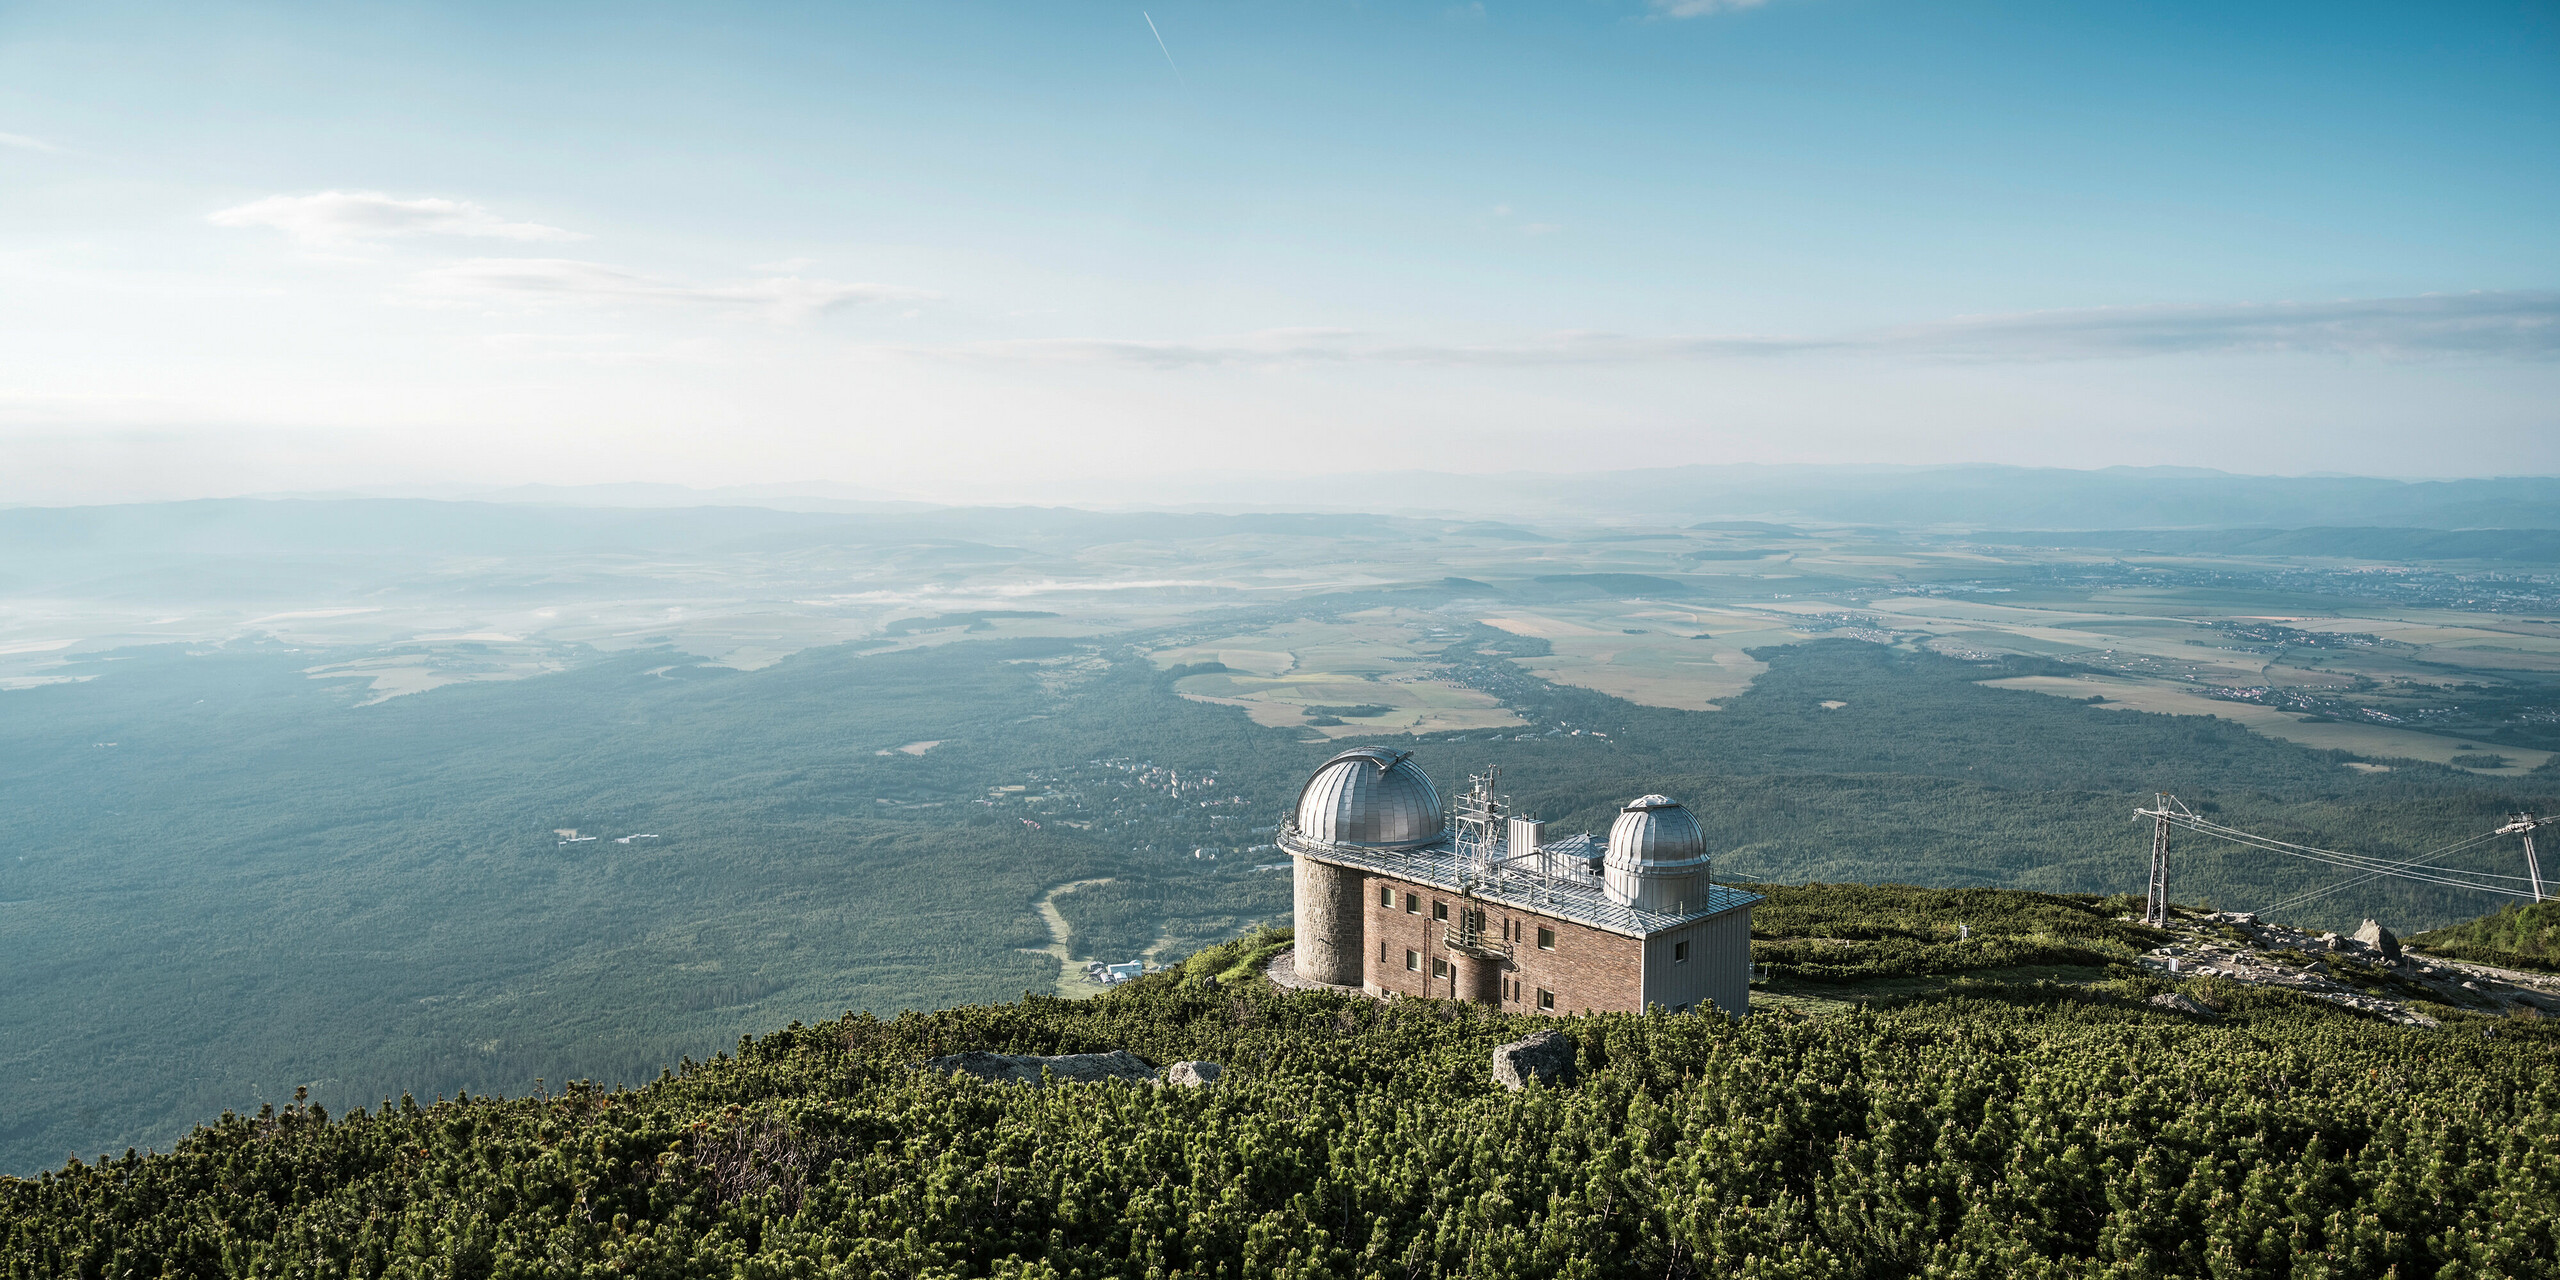 Úchvatné daleké výhledy na hvězdárnu Skalnaté Pleso, která se nachází v nadmořské výšce 1 783 m, obklopená klidnou nádherou Vysokých Tater na Slovensku. Dvě charakteristické kopule pokryté lesklým PREFALZ ve stříbrné metalíze odrážejí rozlehlost oblohy a ladí s přírodou. Hvězdárna představuje nejen astronomickou dokonalost, ale také odolnost a ekologickou sílu společnosti PREFA, jejíž hliníkové produkty poskytují ochranu a odolnost i v této vzdálené nadmořské výšce, podpořenou komplexní 40letou zárukou.